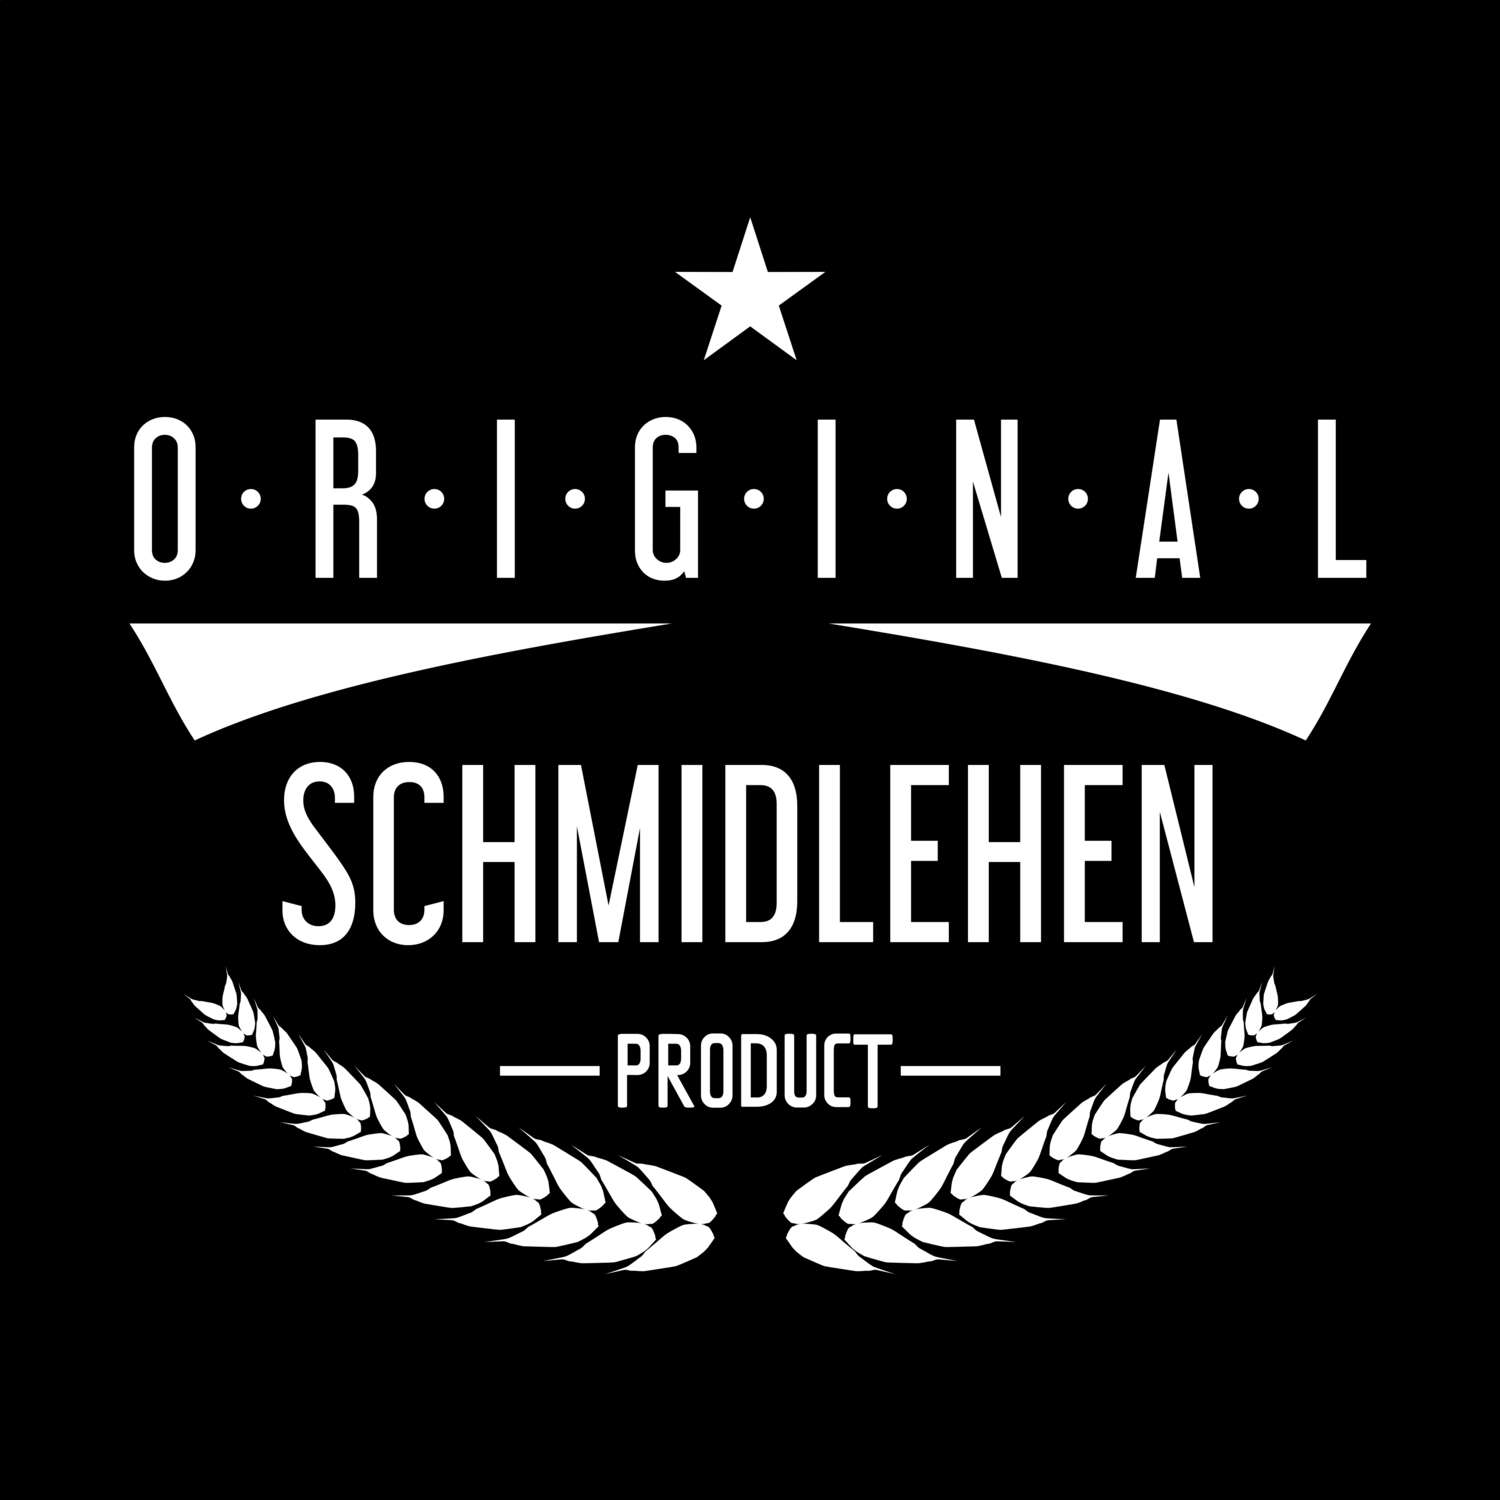 Schmidlehen T-Shirt »Original Product«